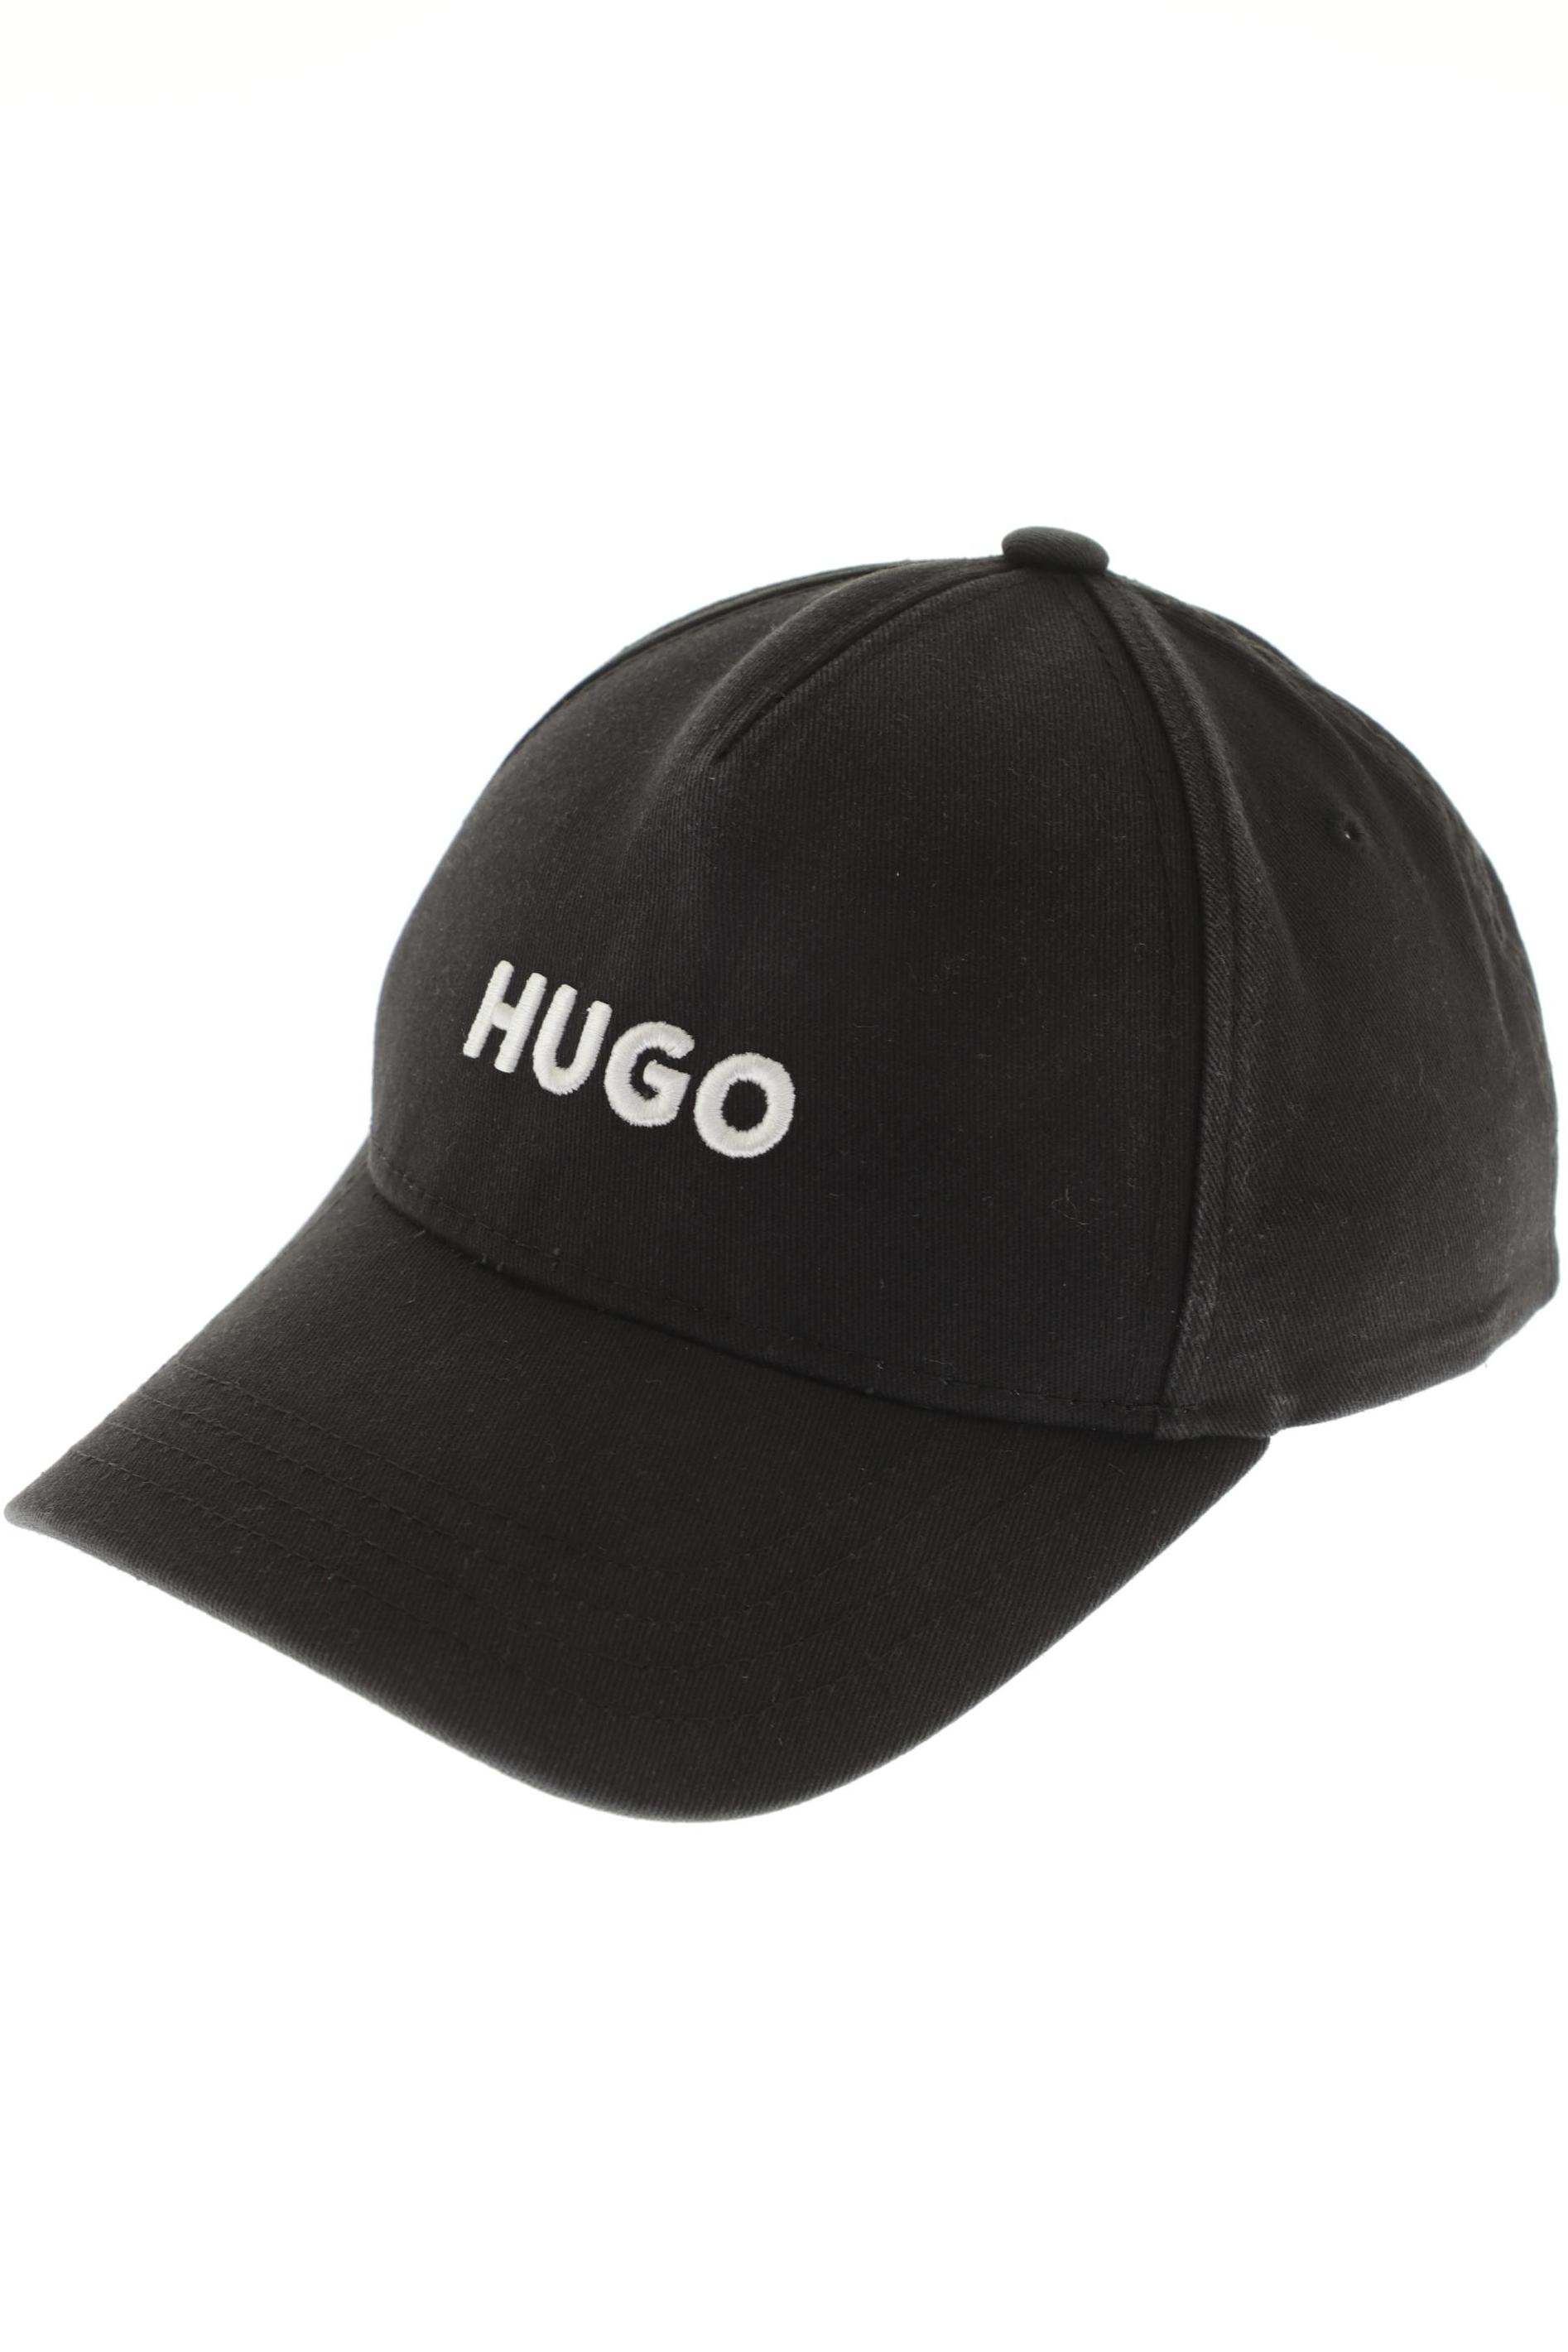 Hugo by Hugo Boss Herren Hut/Mütze, schwarz, Gr. uni von HUGO by Hugo Boss